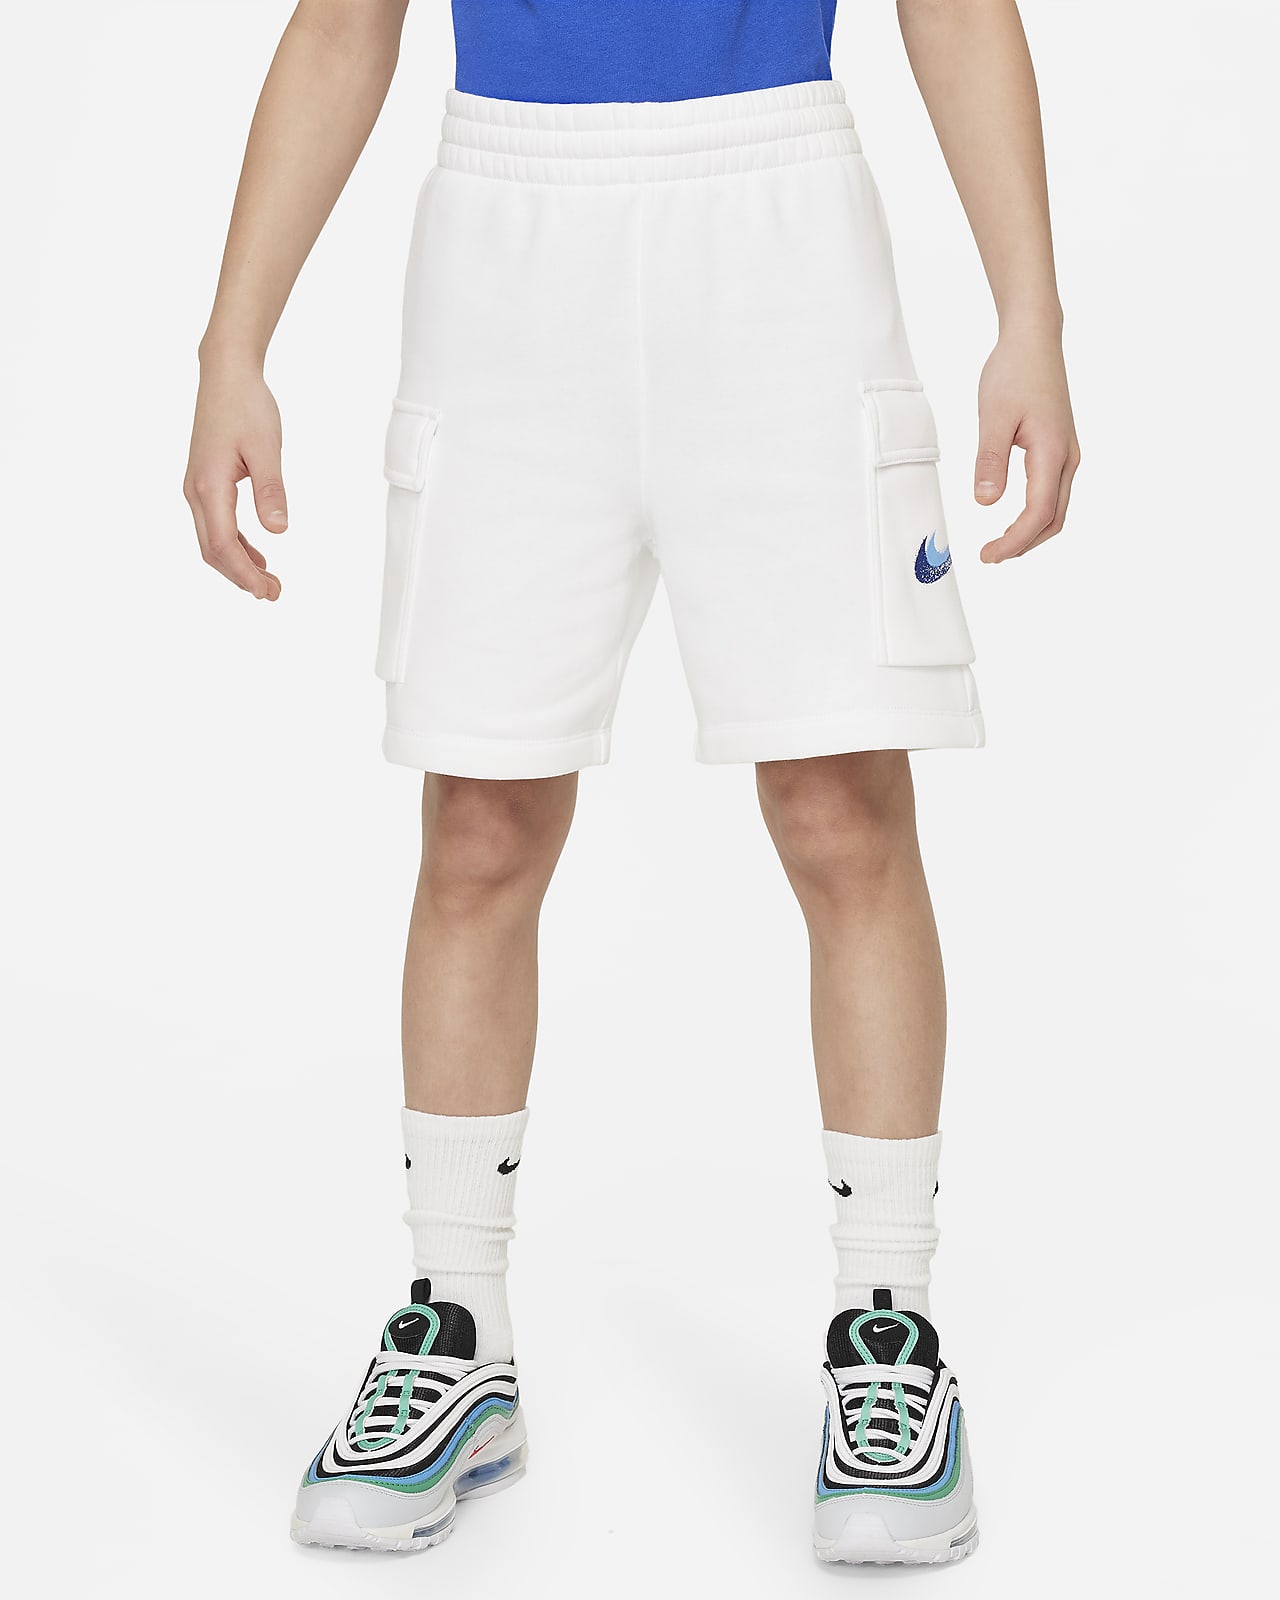 Shorts in fleece Nike Sportswear Standard Issue – Ragazzo